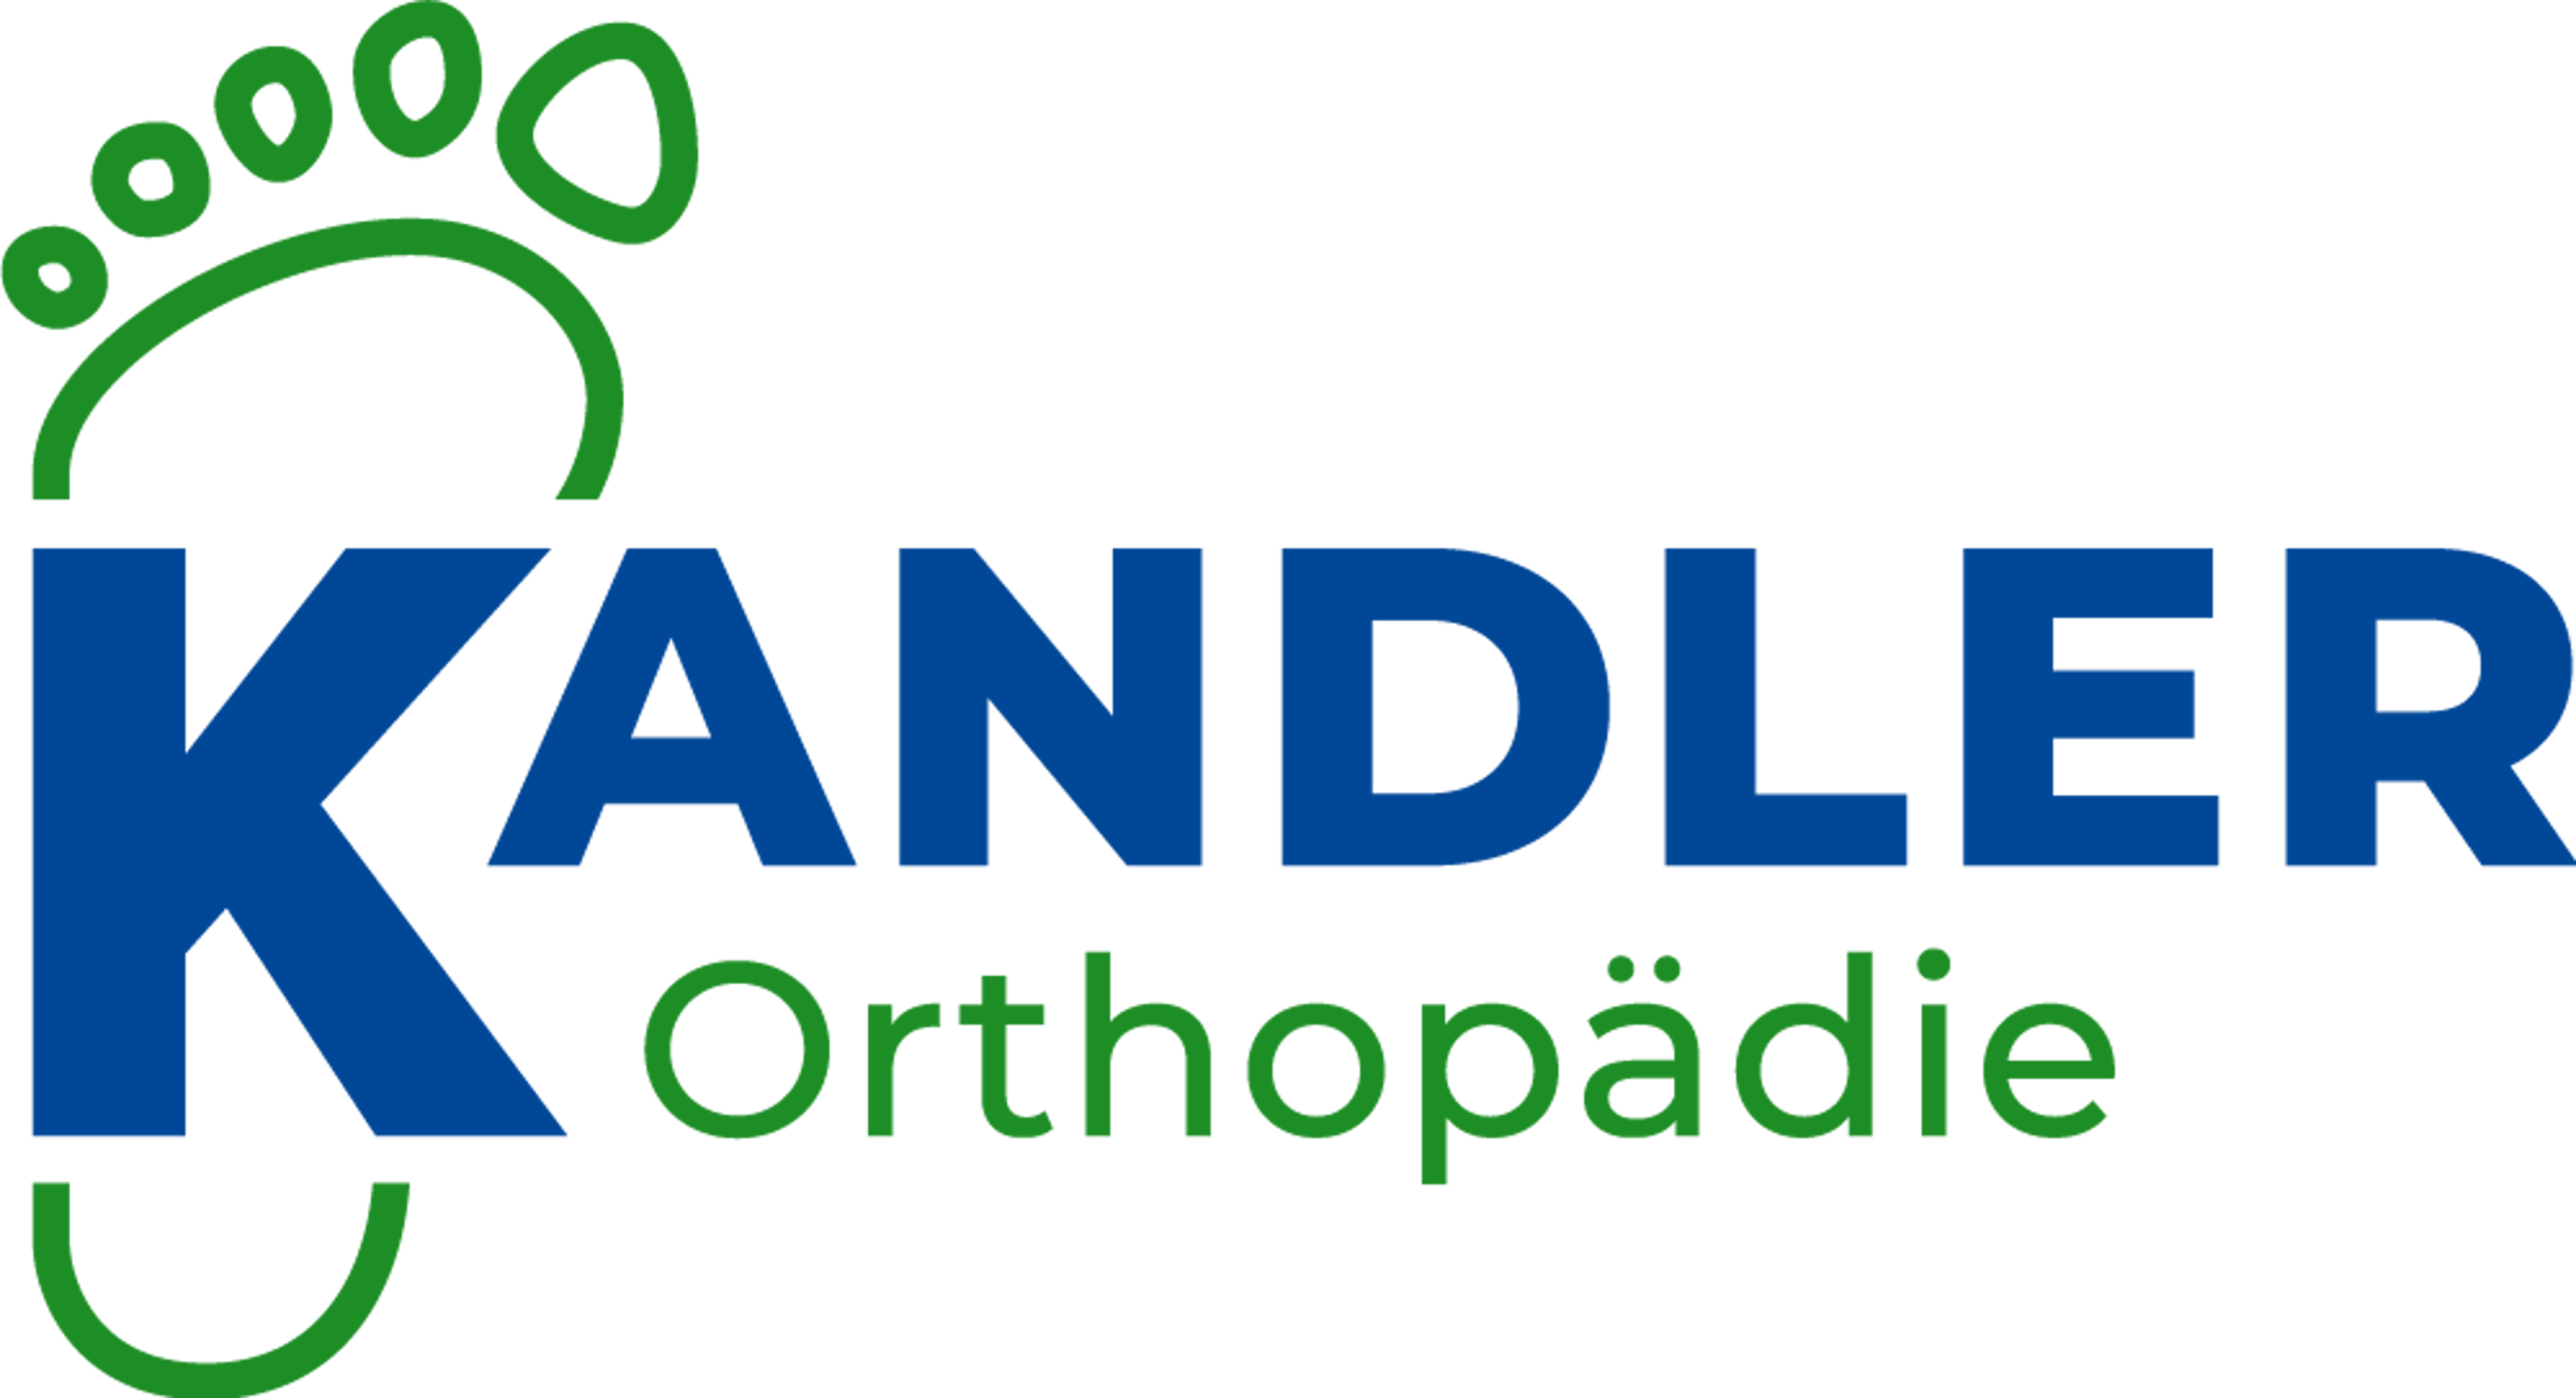 (c) Kandler-orthopaedie.de